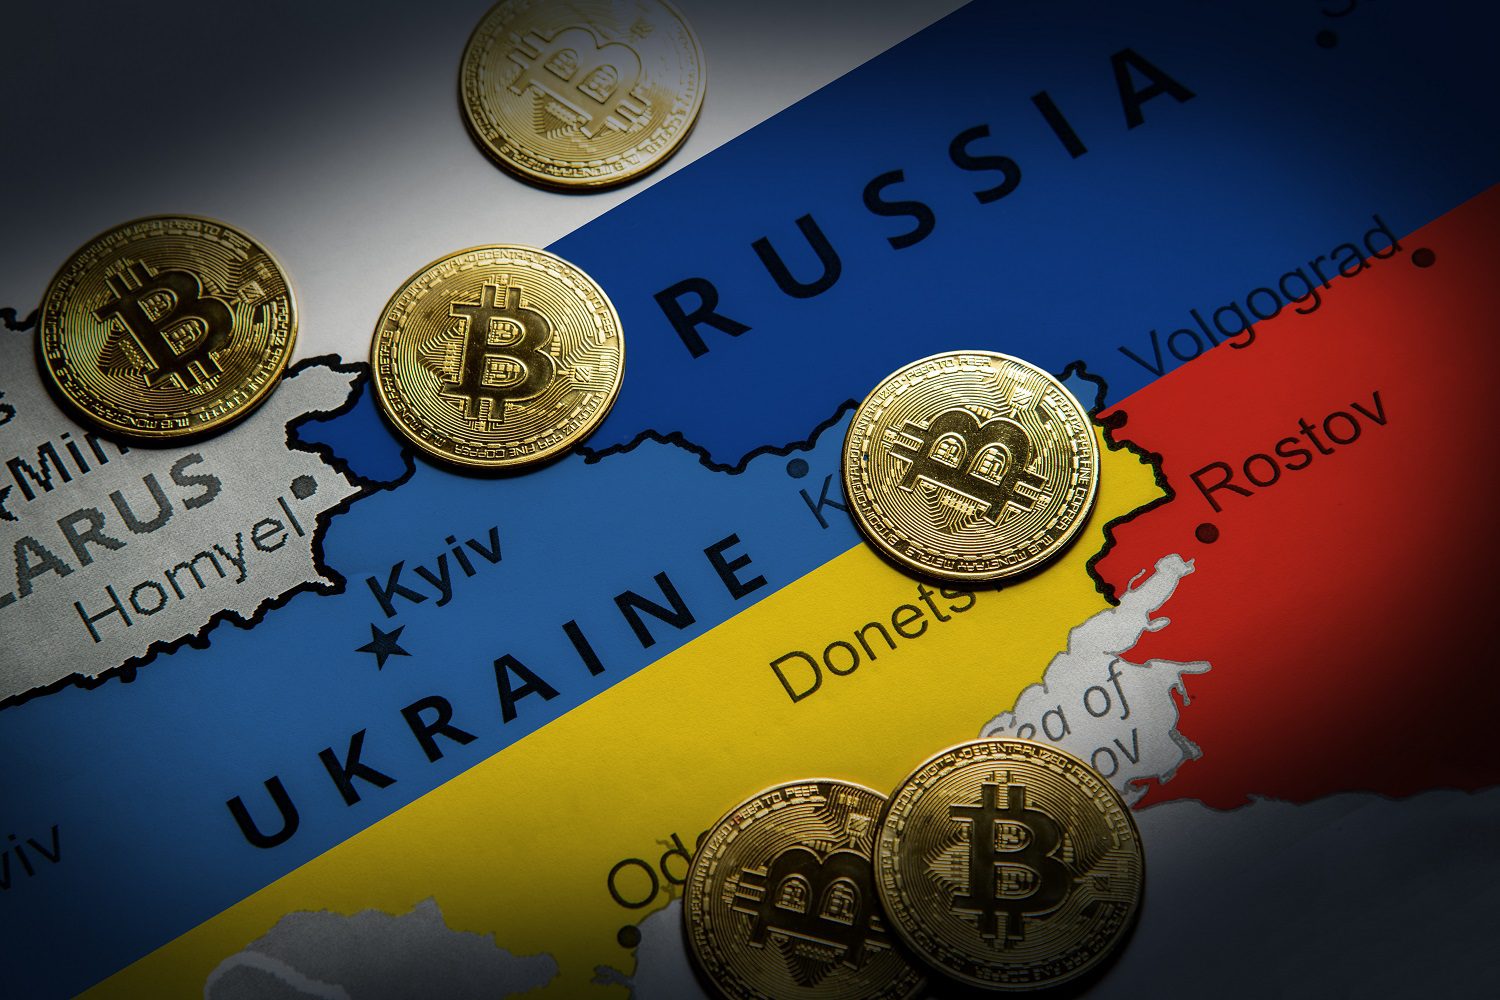 Tokens destinados a representar a Bitcoin en un mapa de Rusia y Ucrania, con cada nación coloreada con los tonos de su bandera nacional.